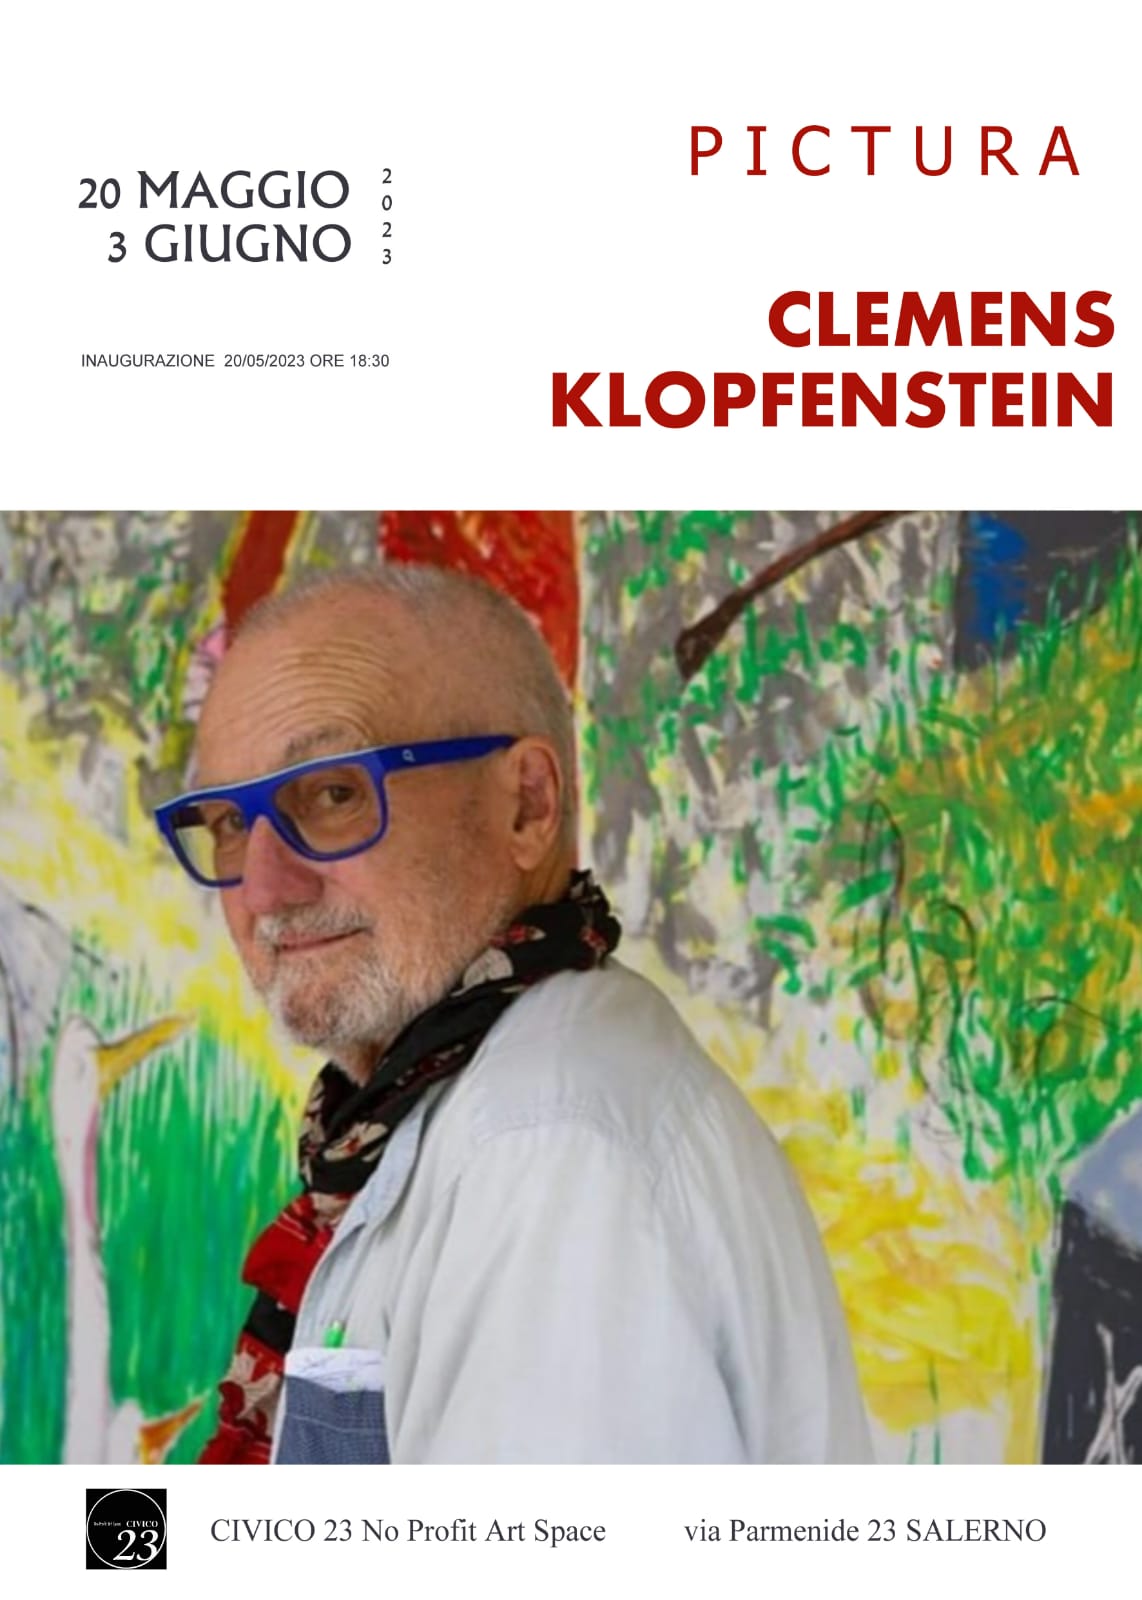 Pictura, Clemens Klopfenstein in Salerno, Civico 23